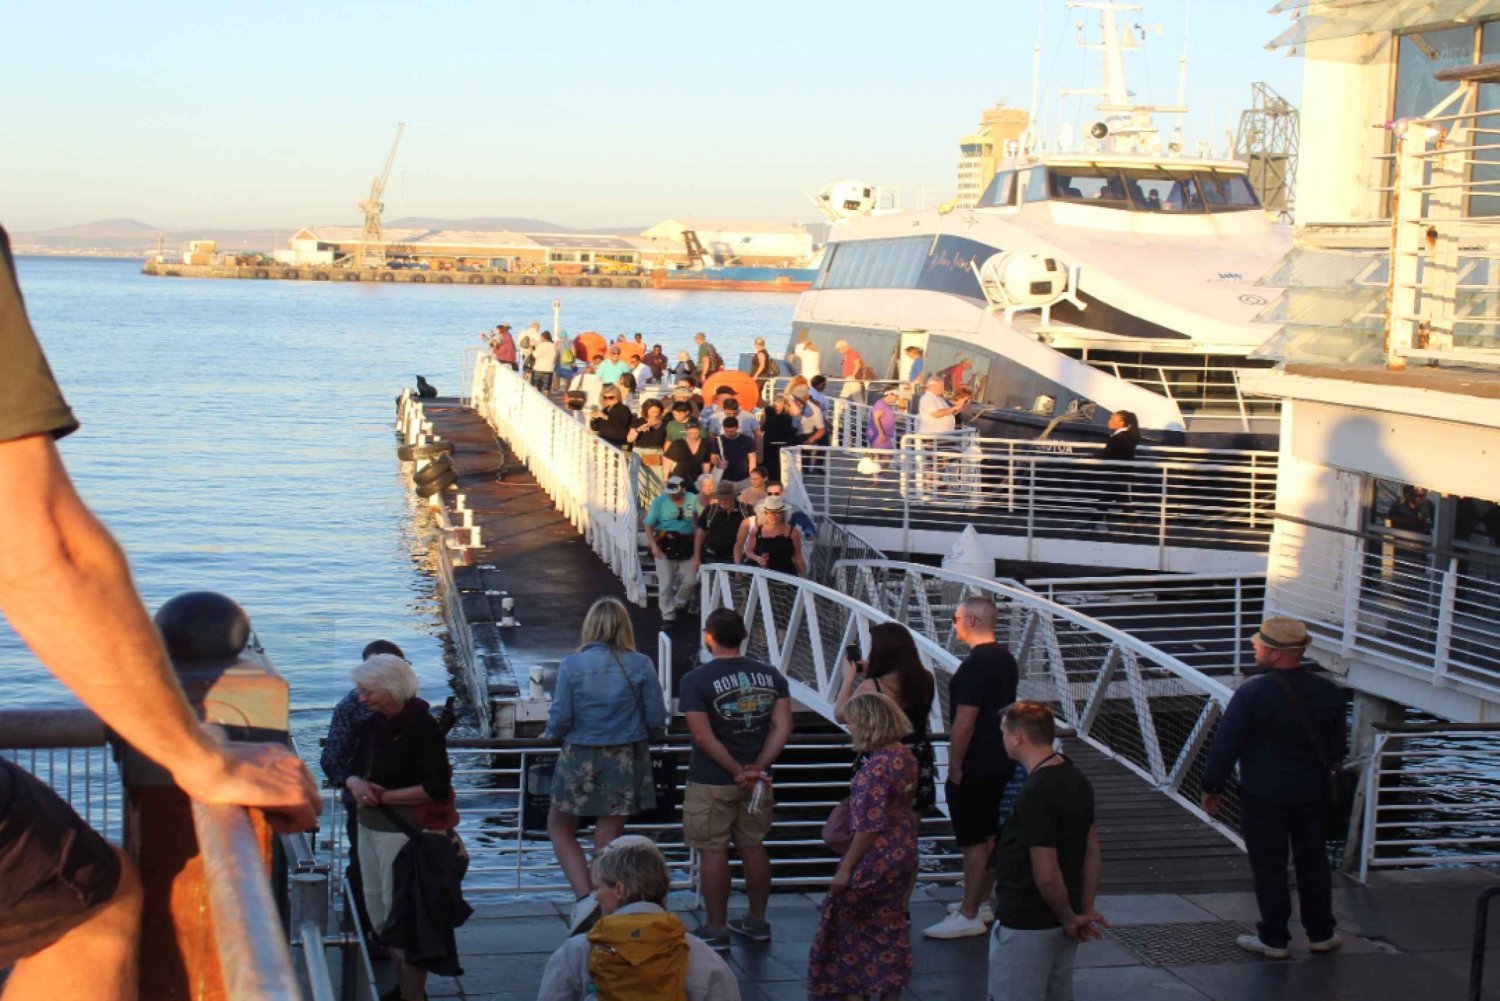 Ciudad del Cabo: Museo de la Isla Robben y ticket de entrada al ferry